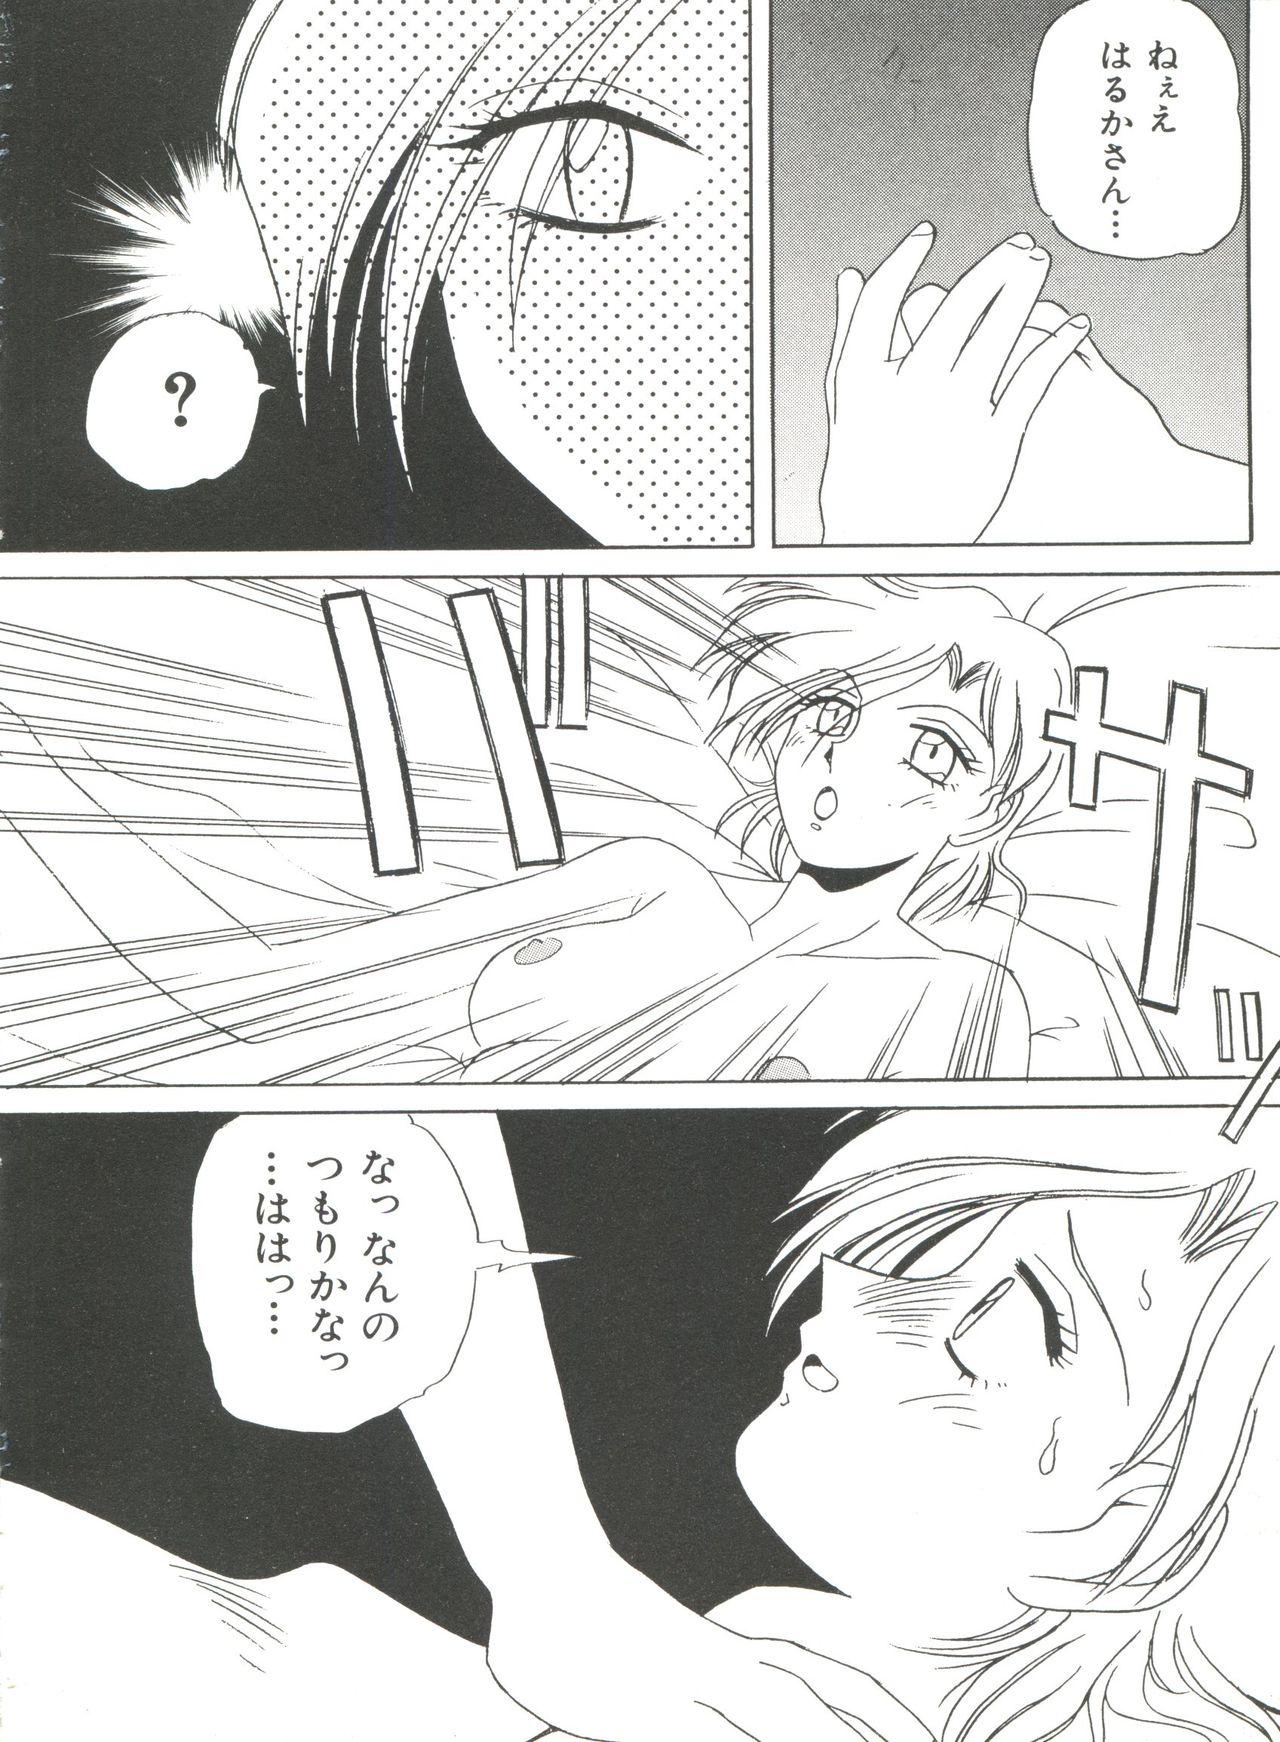 Bishoujo Doujinshi Anthology 8 - Moon Paradise 5 Tsuki no Rakuen 34